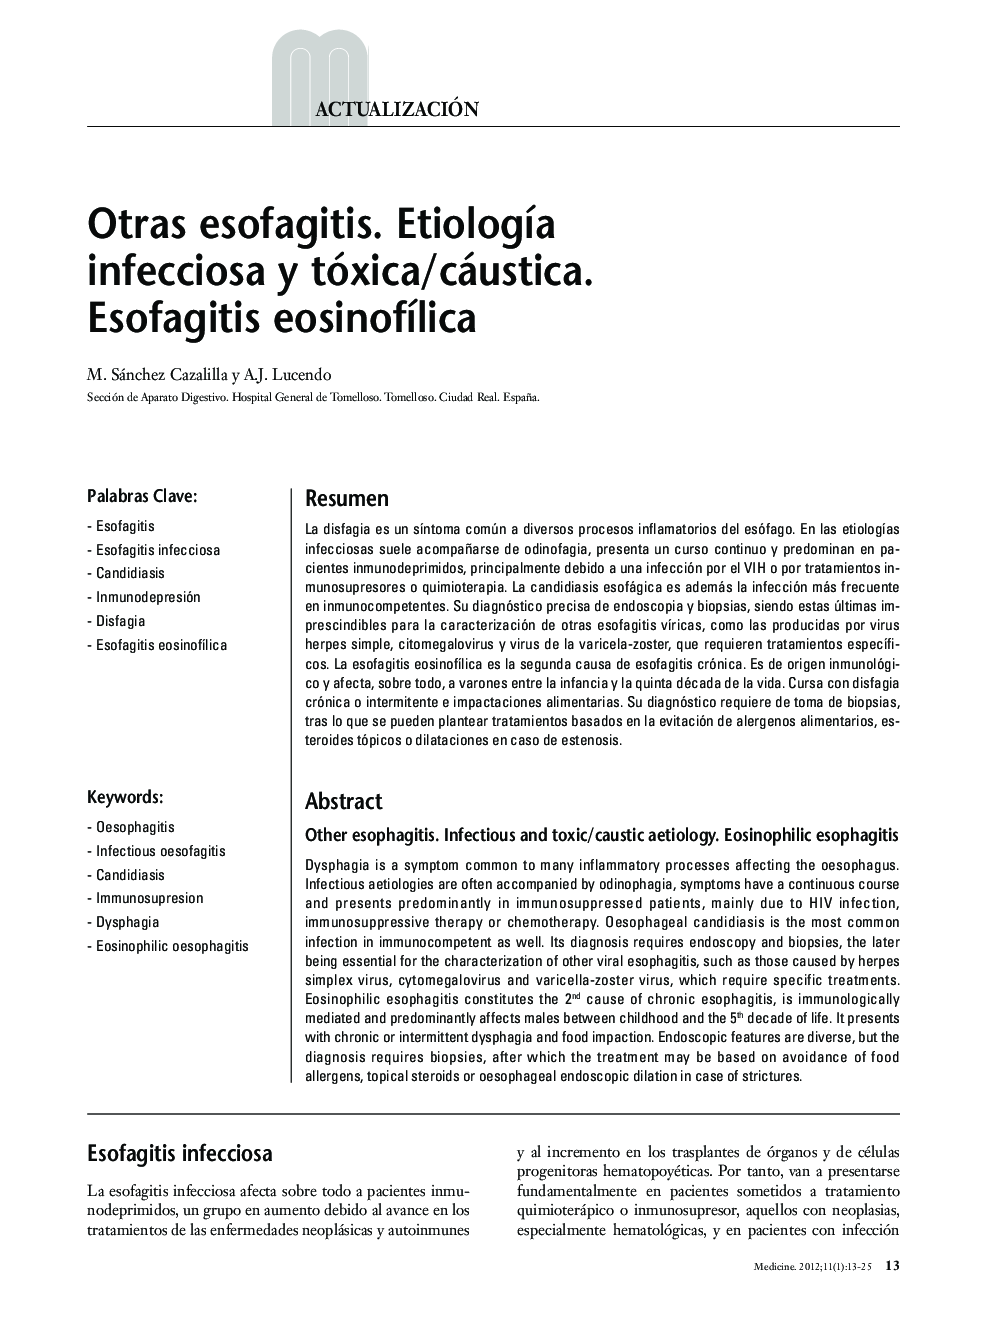 Otras esofagitis. Etiología infecciosa y tóxica/cáustica. Esofagitis eosinofílica